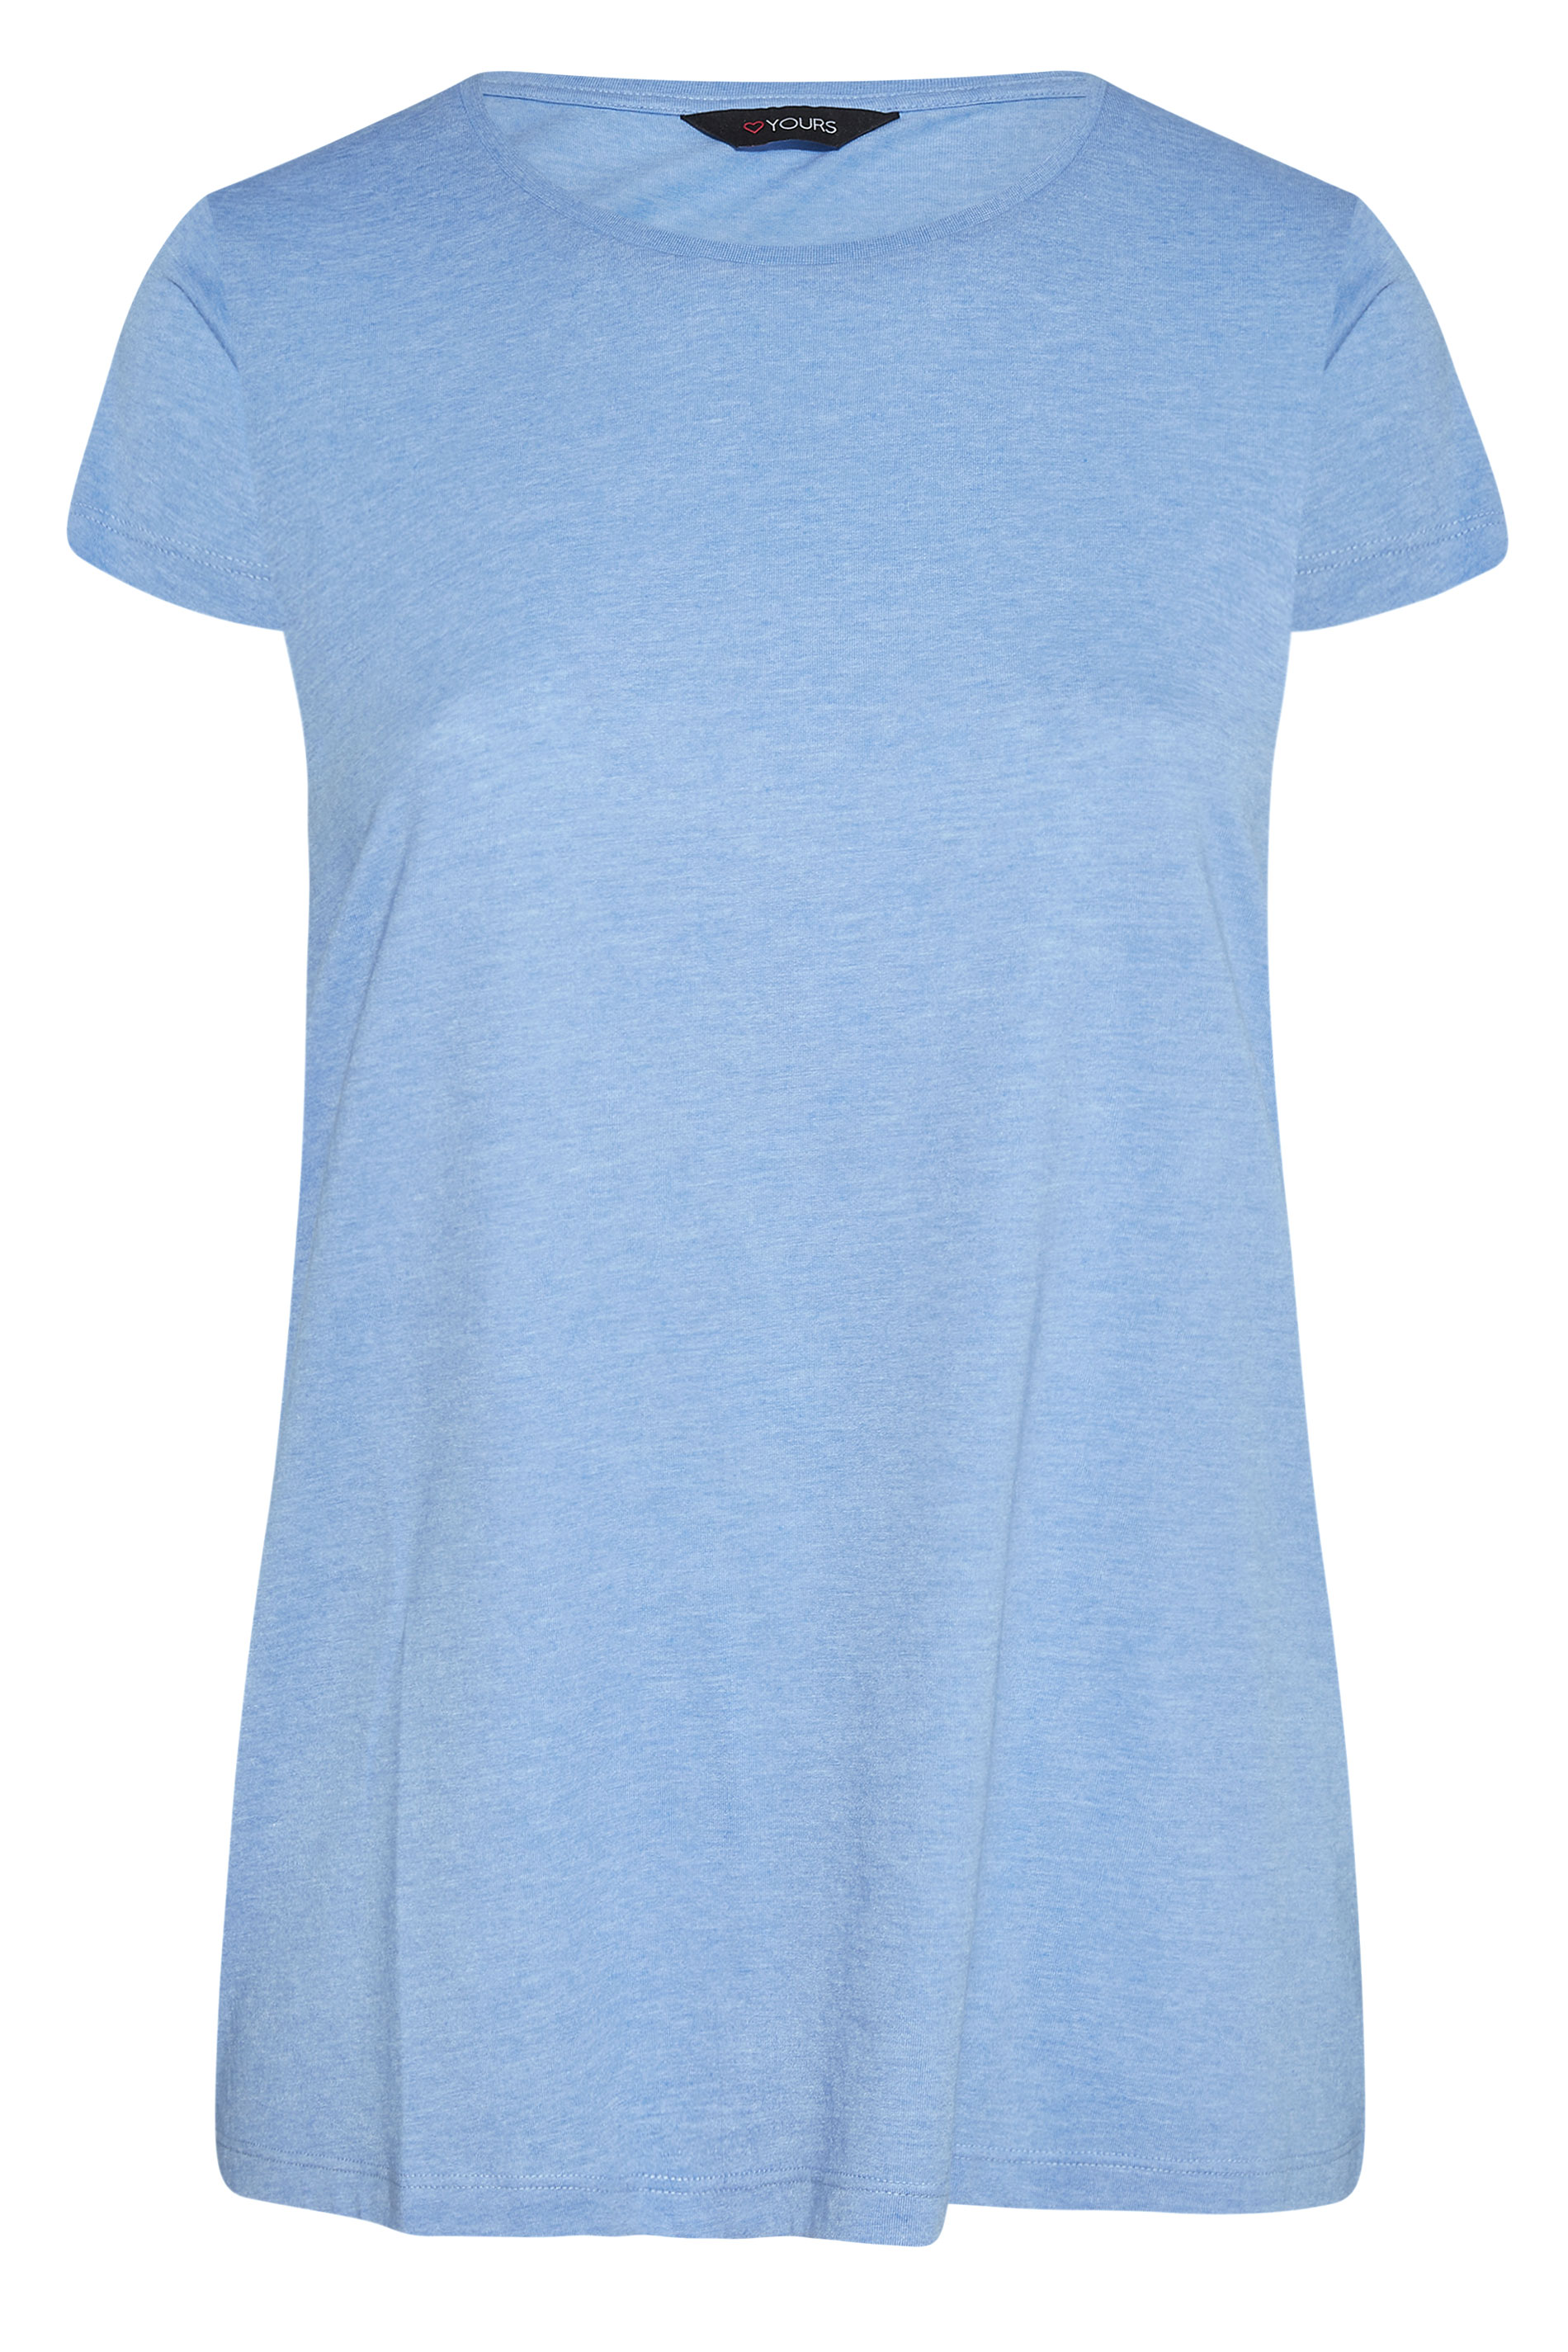 Grande taille  Tops Grande taille  T-Shirts Basiques & Débardeurs | T-Shirt Bleu Ciel en Jersey - VU64195